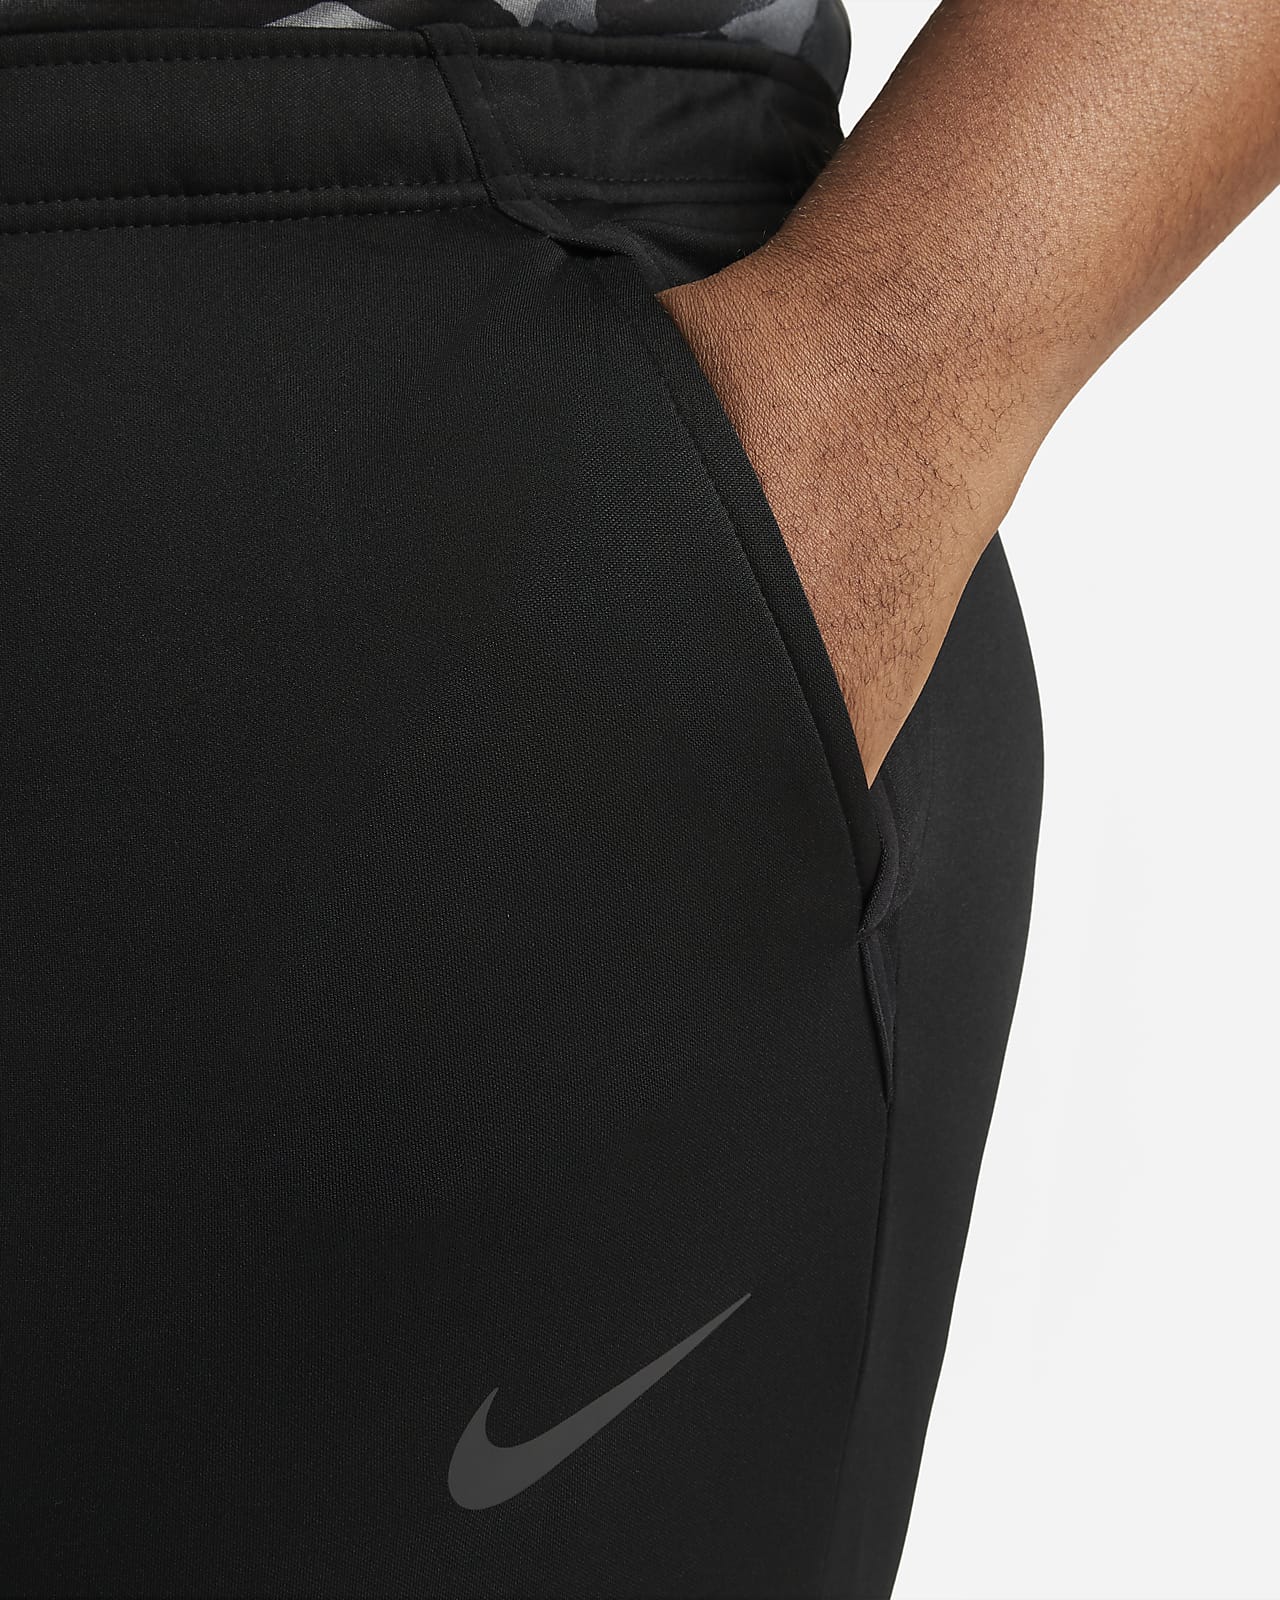 Nike Men's Training Pants.